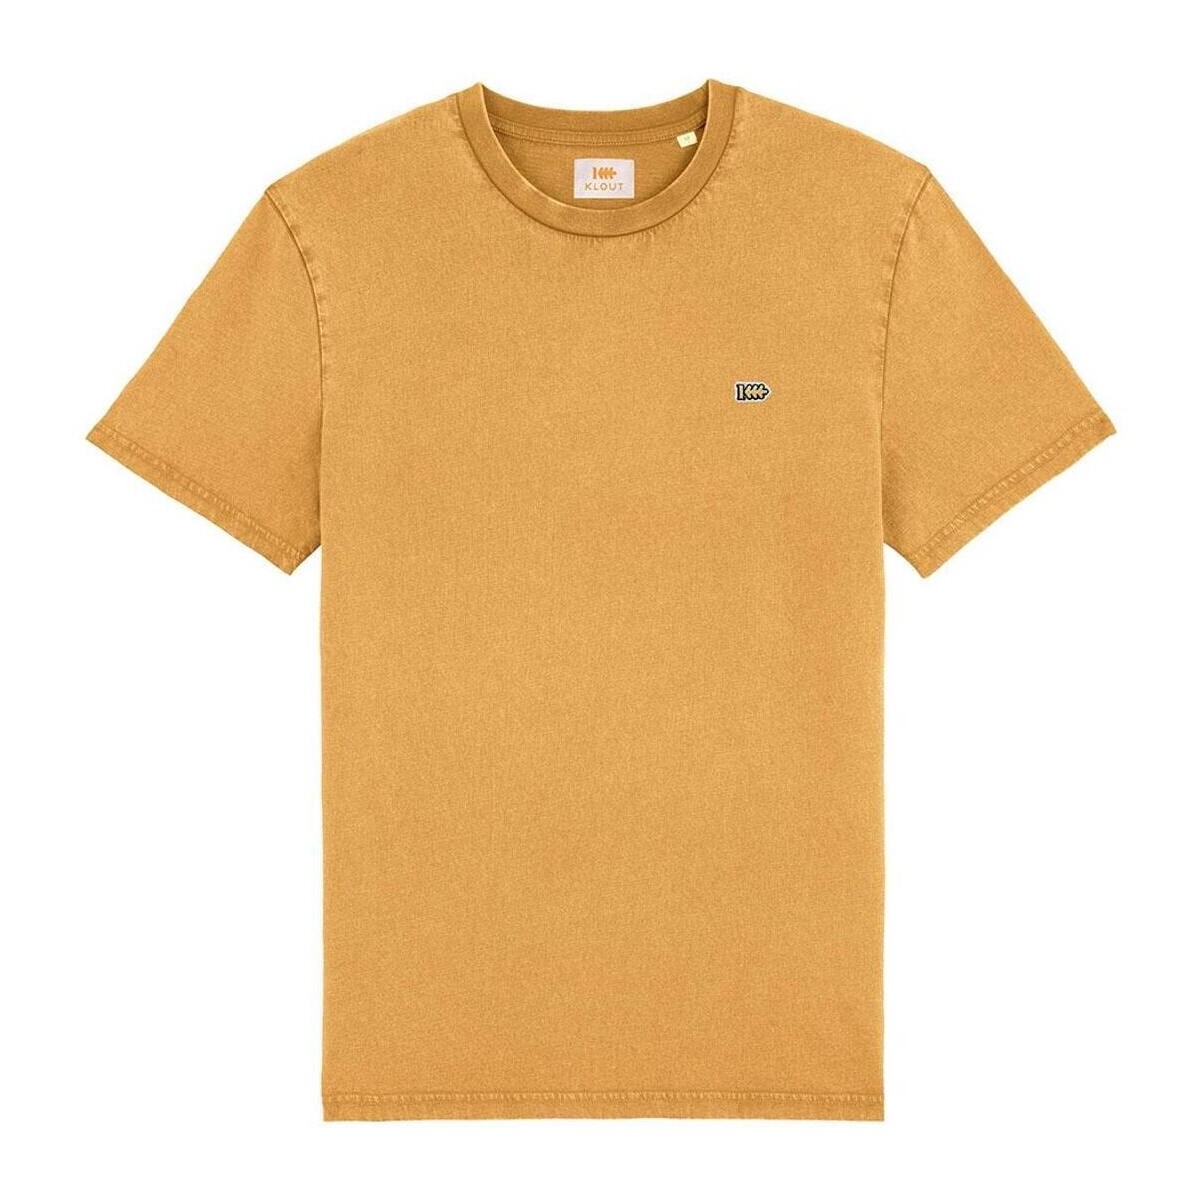 textil Camisetas manga corta Klout CAMISETA Amarillo